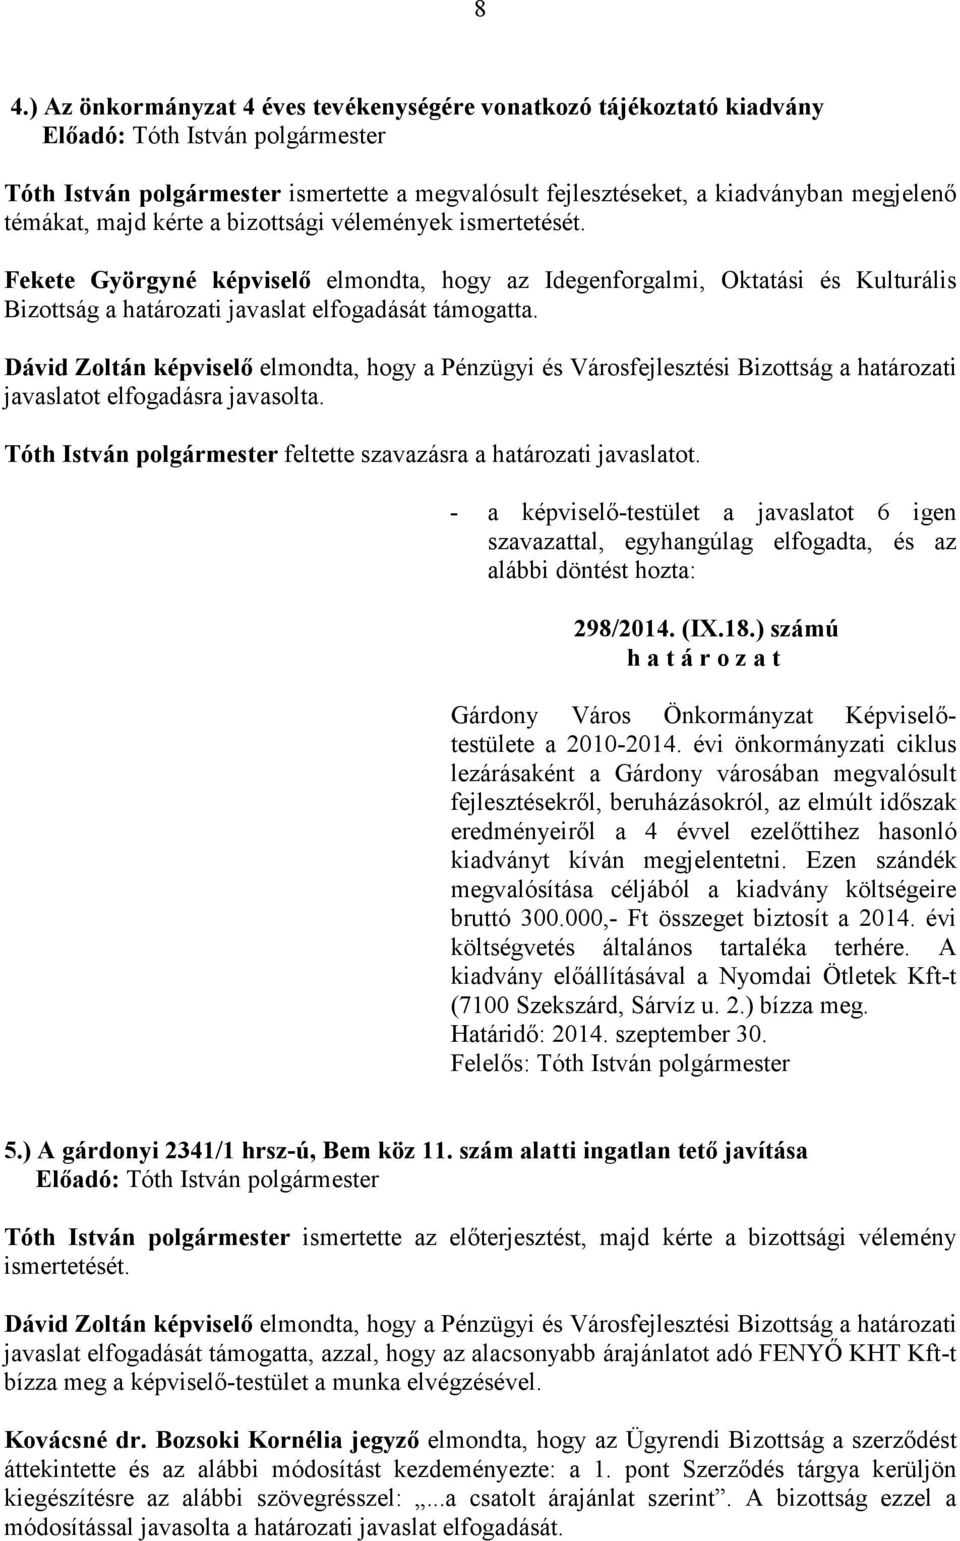 Dávid Zoltán képviselı elmondta, hogy a Pénzügyi és Városfejlesztési Bizottság a határozati javaslatot elfogadásra javasolta. feltette szavazásra a határozati javaslatot. 298/2014. (IX.18.